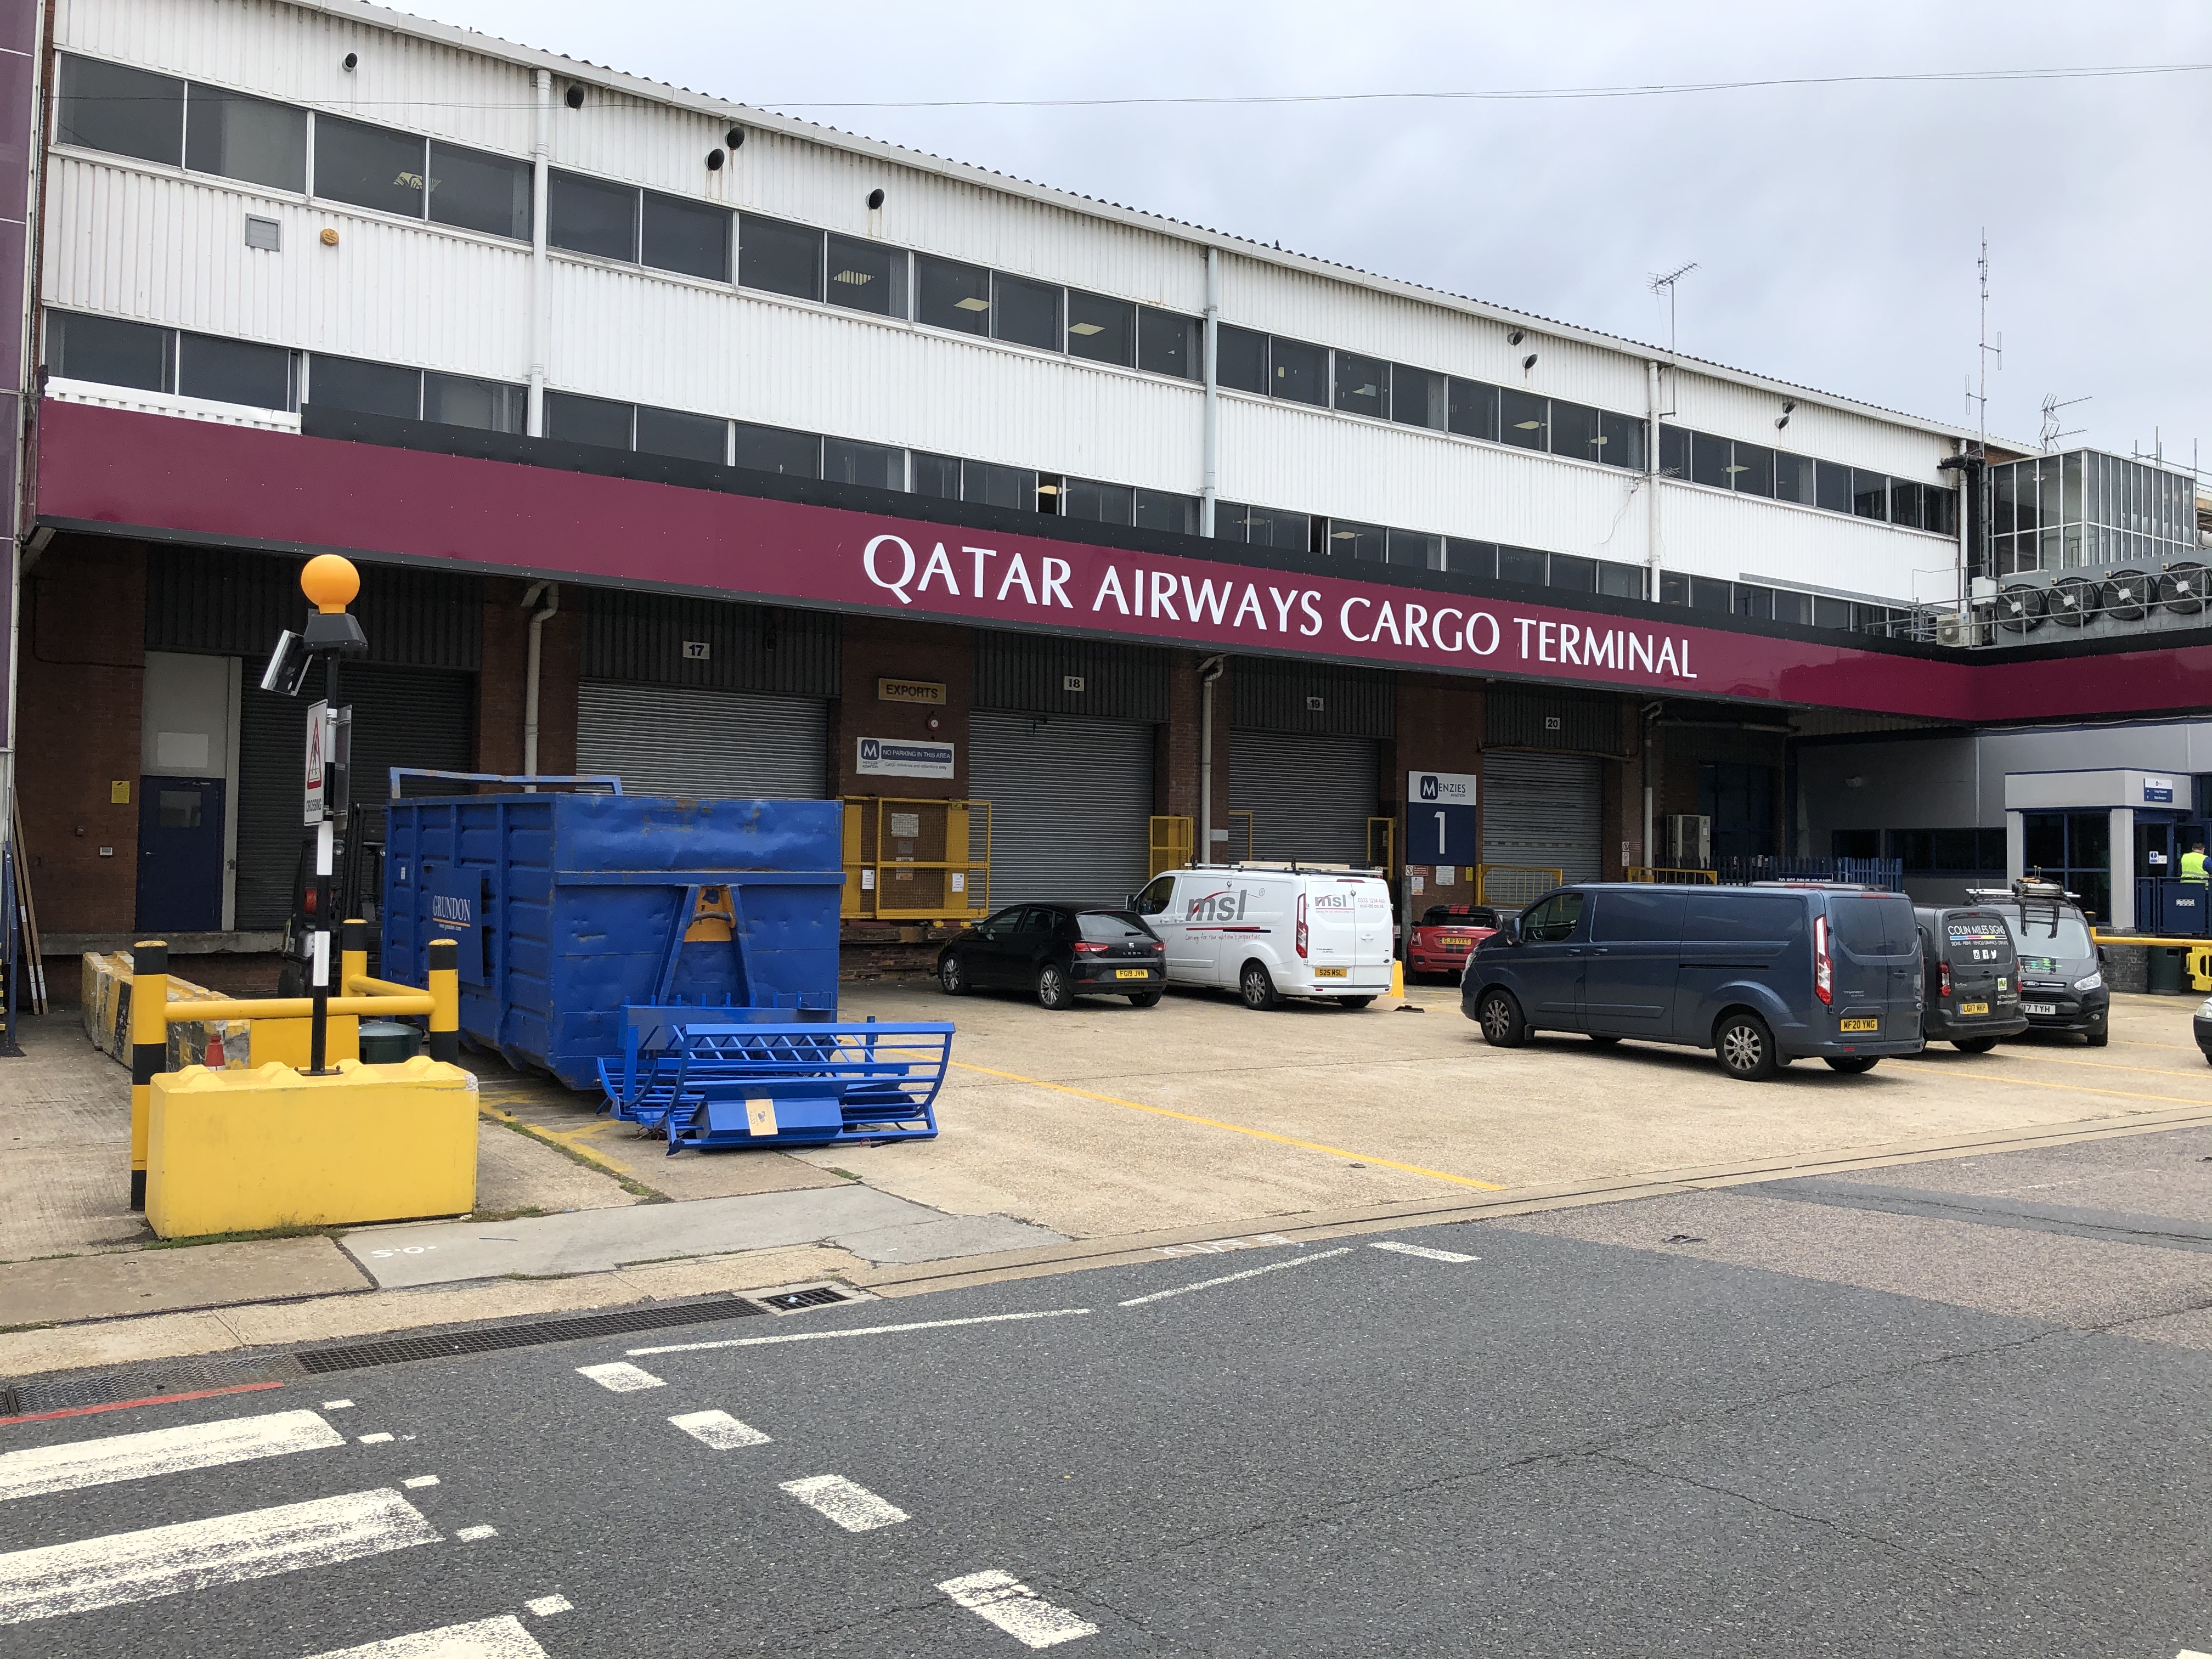 Qatar Airways Cargo Handling Terminal